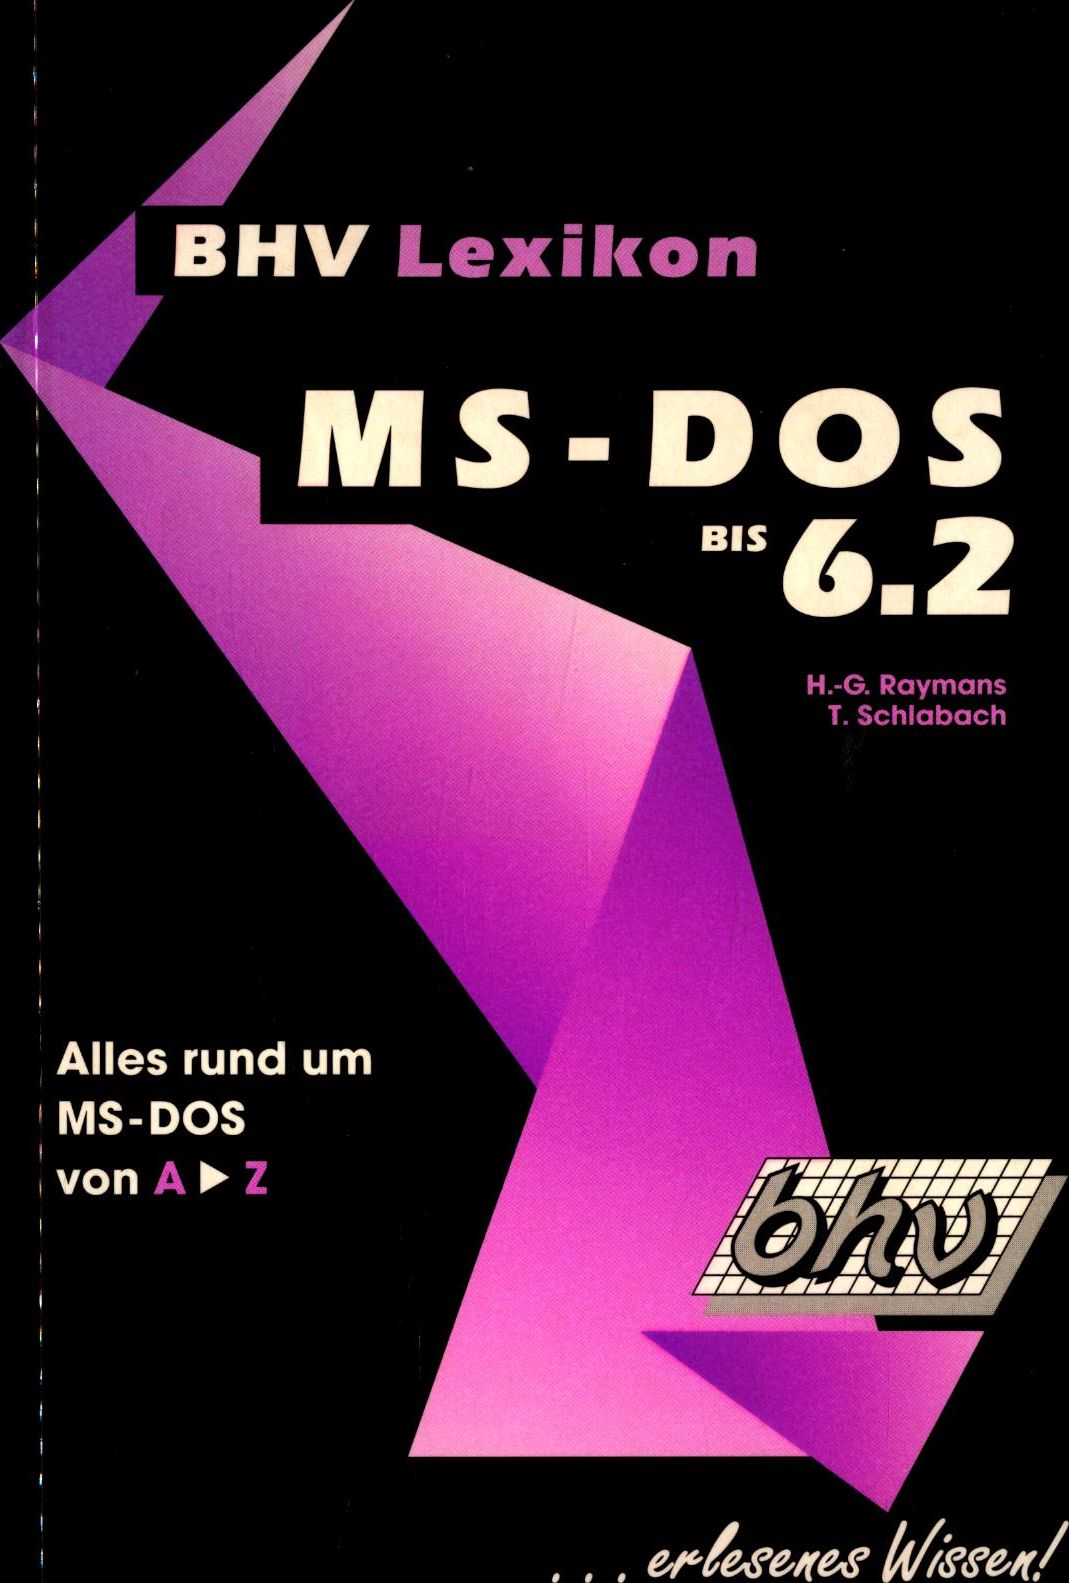 BHV Lexikon MS-DOS bis 6.2 Alles rund um MS-DOS von A - Z 1. Auflage - Raymans, Heinz-Gerd und Torsten Schlabach